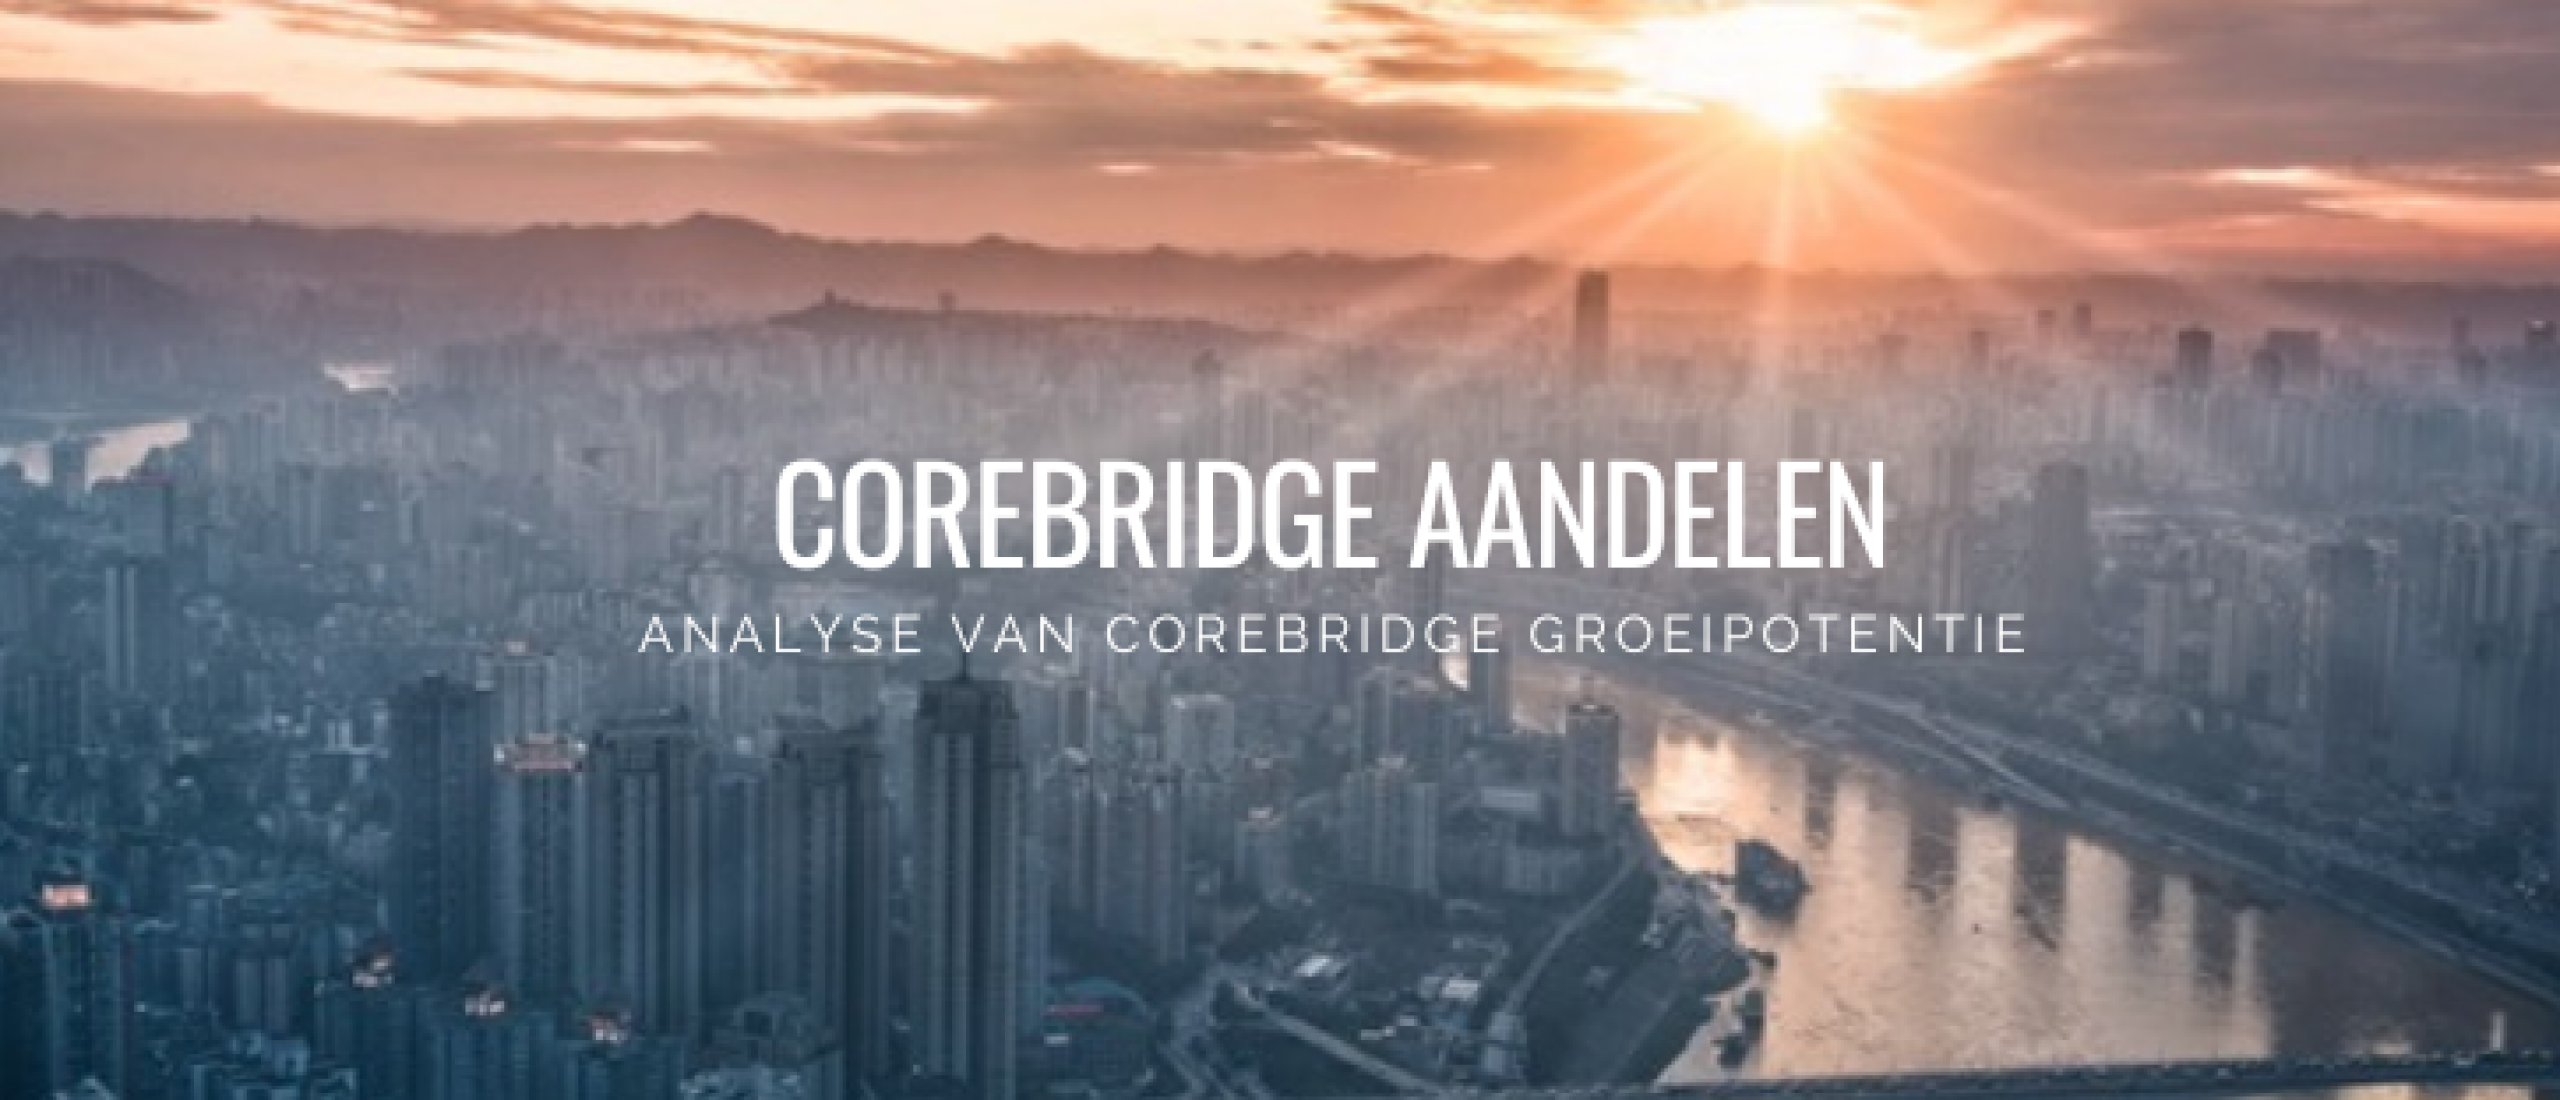 Corebridge Aandelen kopen? +5,7% Dividend en Groei | Happy Investors